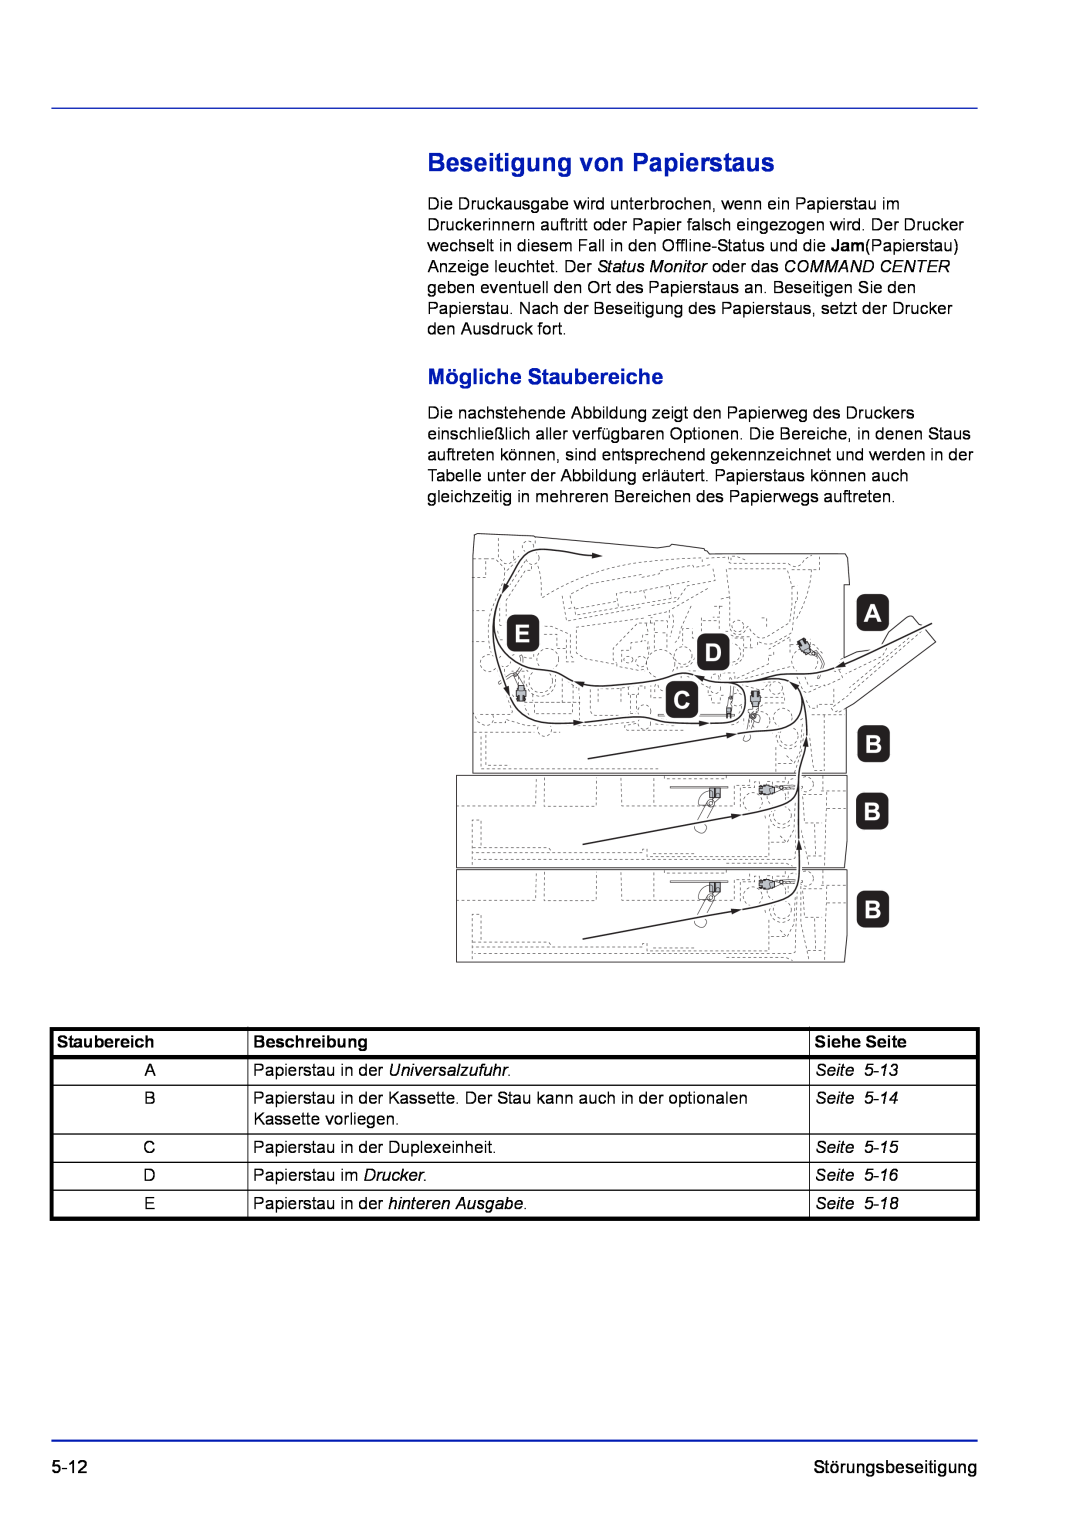 Kyocera FS-1120D, FS-1320D Beseitigung von Papierstaus, Mögliche Staubereiche, Siehe Seite, 5-13, 5-14, 5-15, 5-16, 5-18 